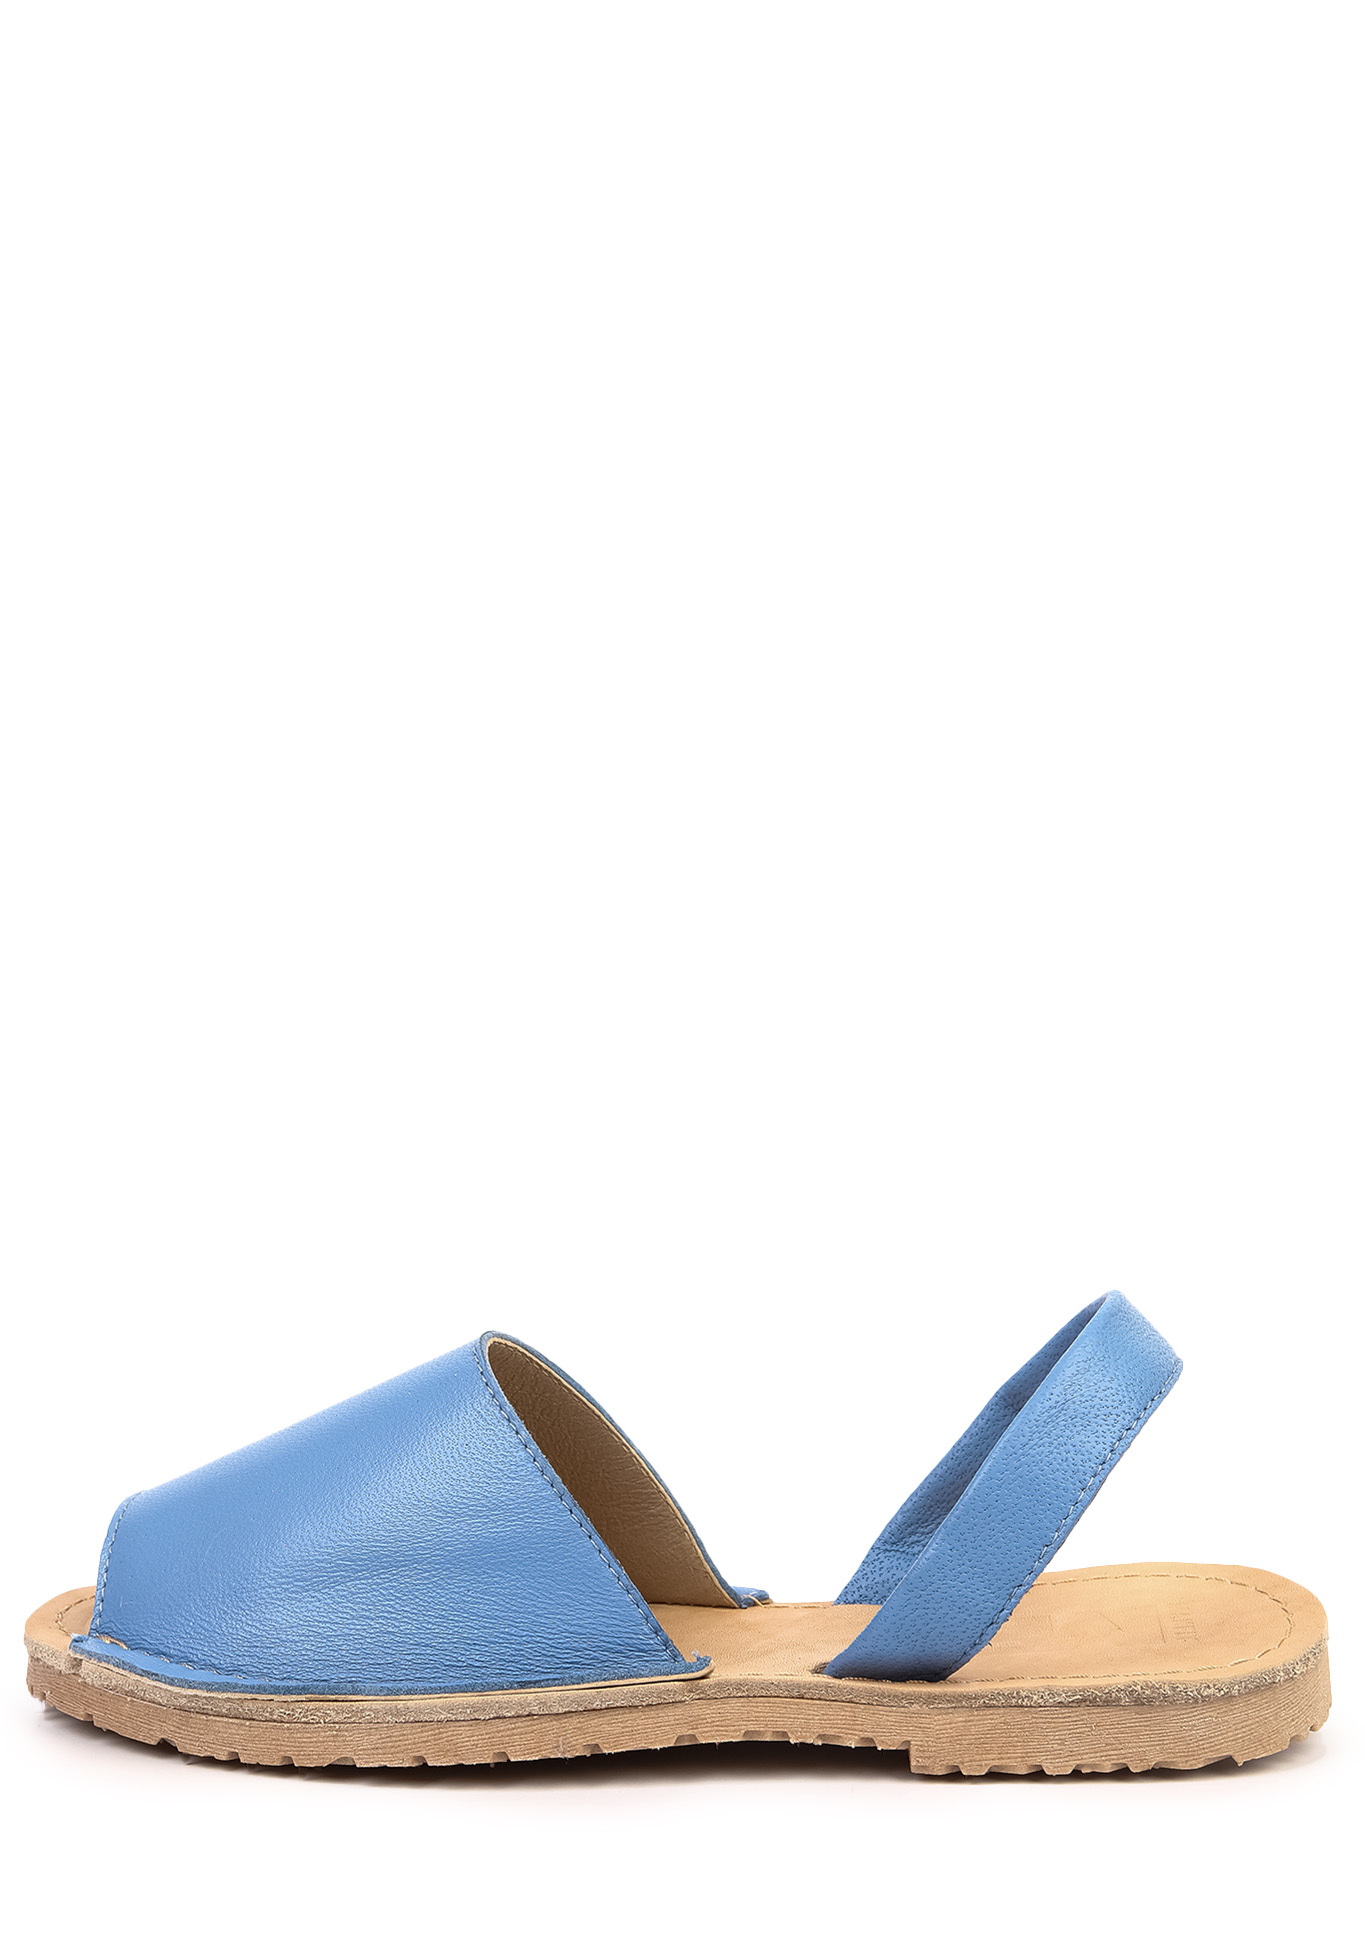 Босоножки женские "Виолла" Makfly, размер 36, цвет голубой - фото 2